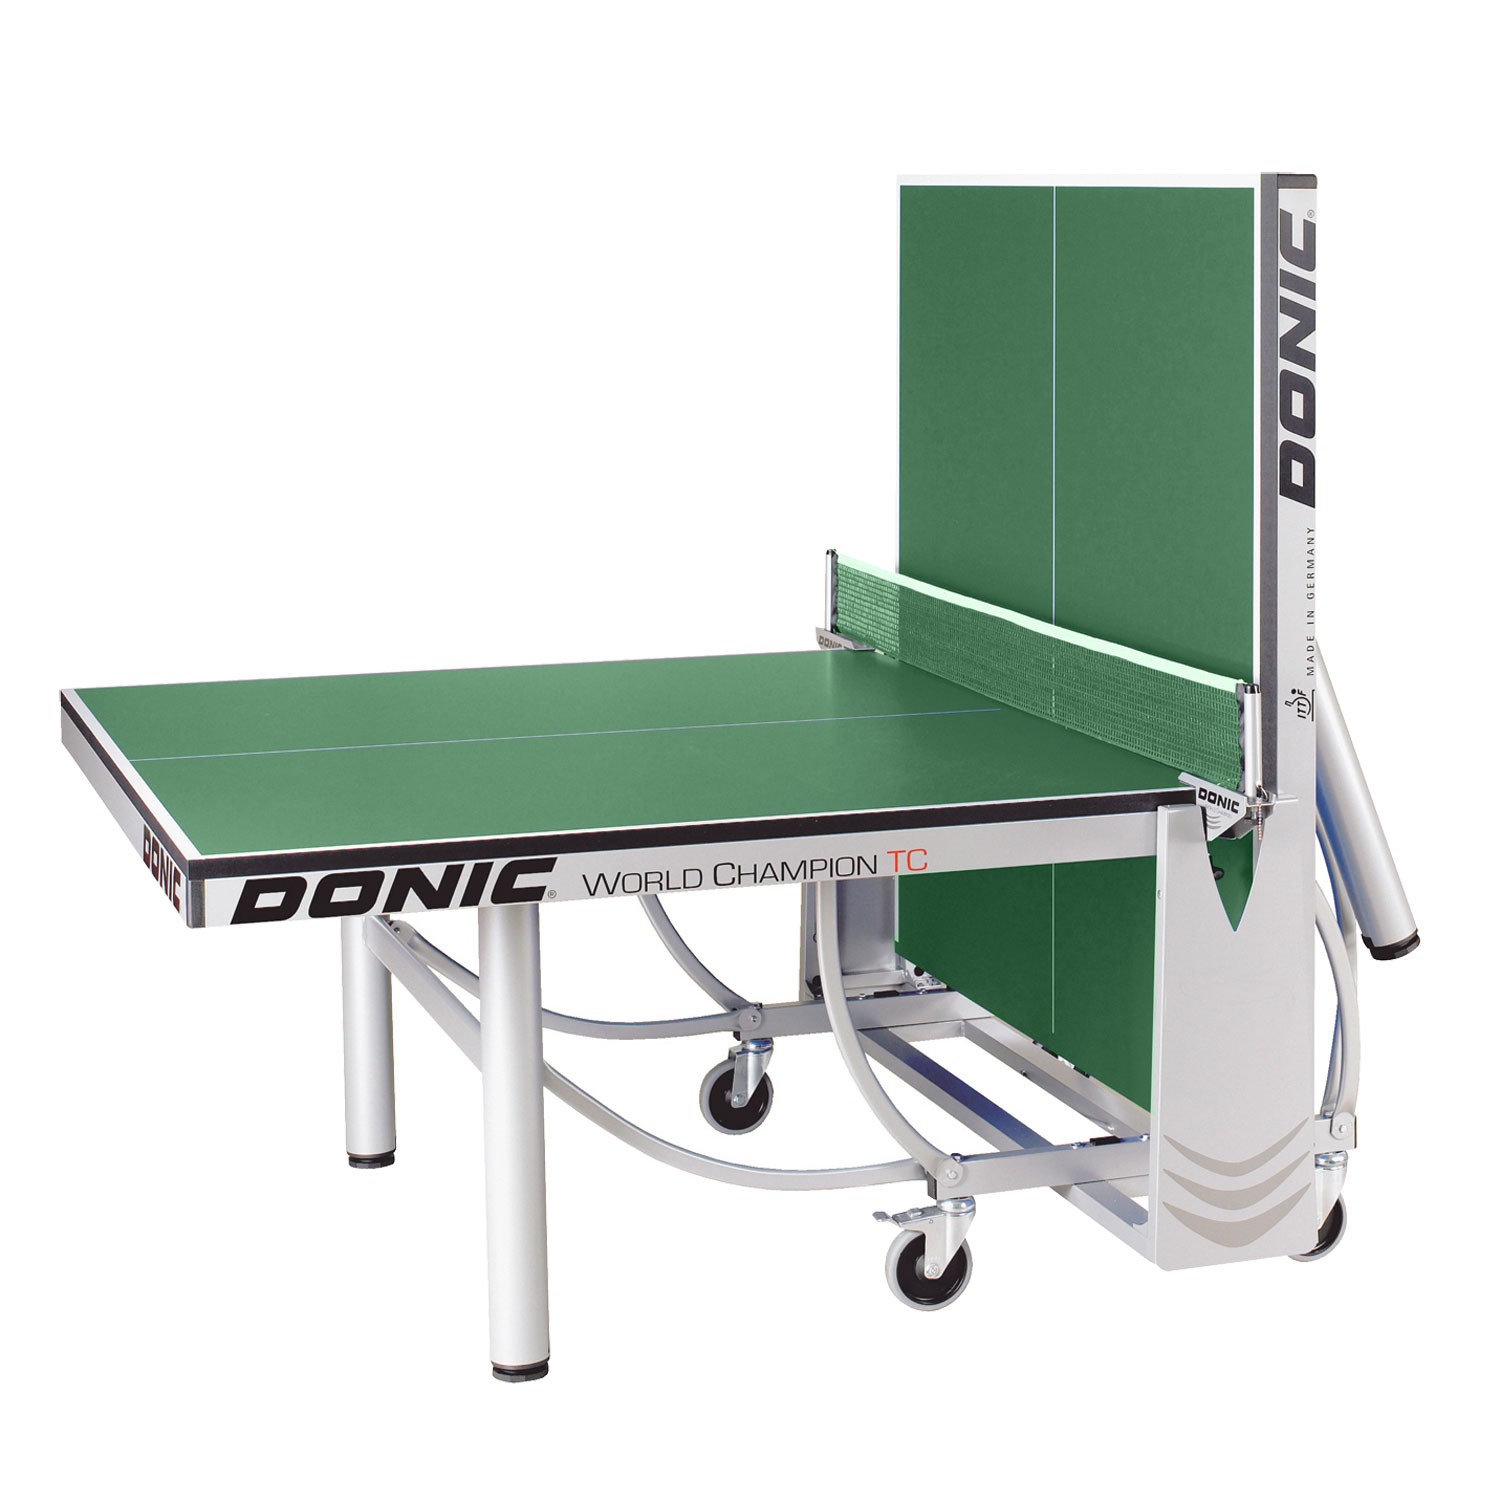 Теннисный стол Donic WORLD CHAMPION TC зеленый (без сетки), изображение 5